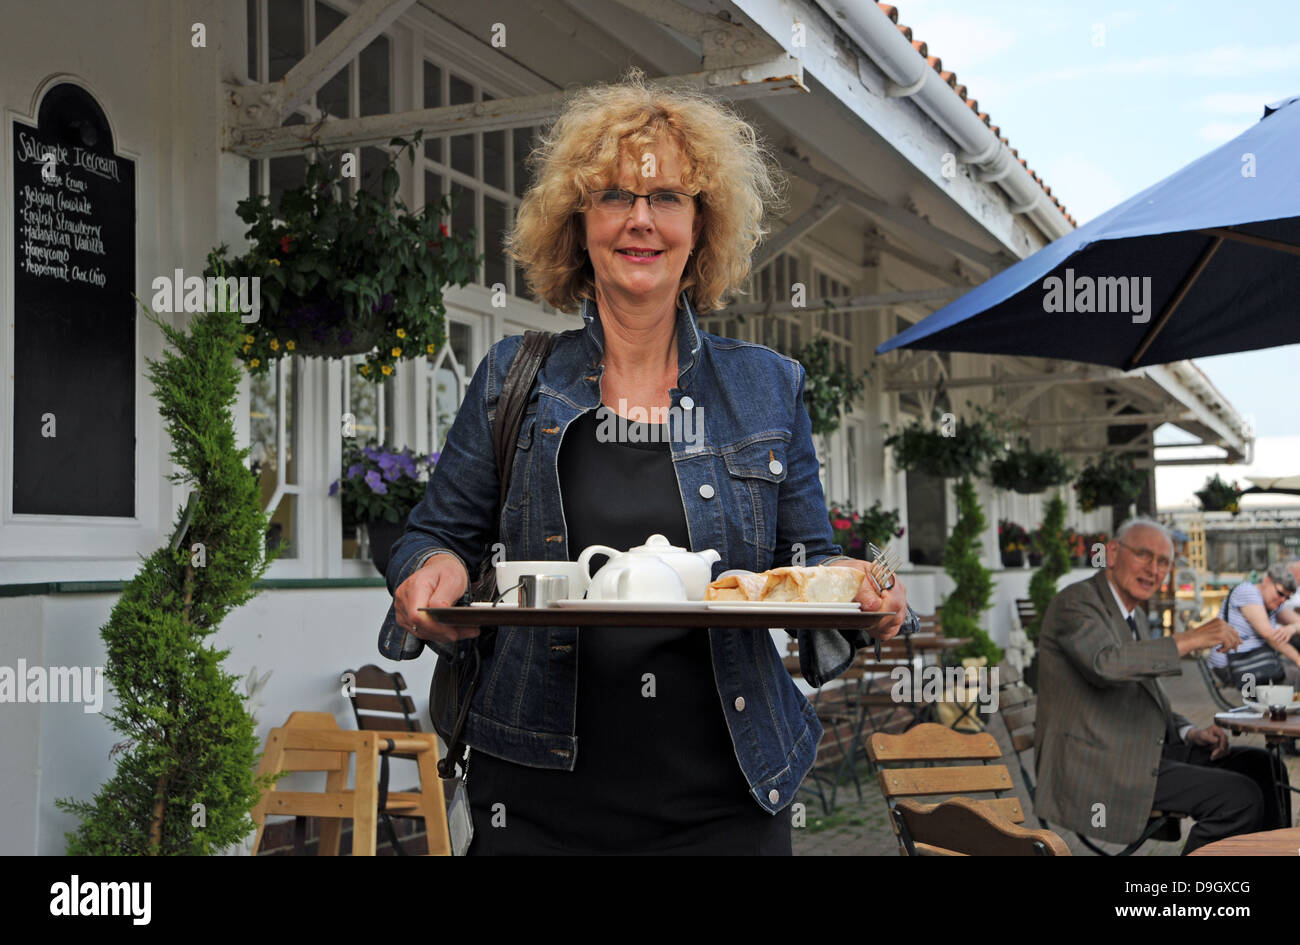 Frau mit einem Tablett an Getränken in einem Gartencenter Wyevale café Stockfoto